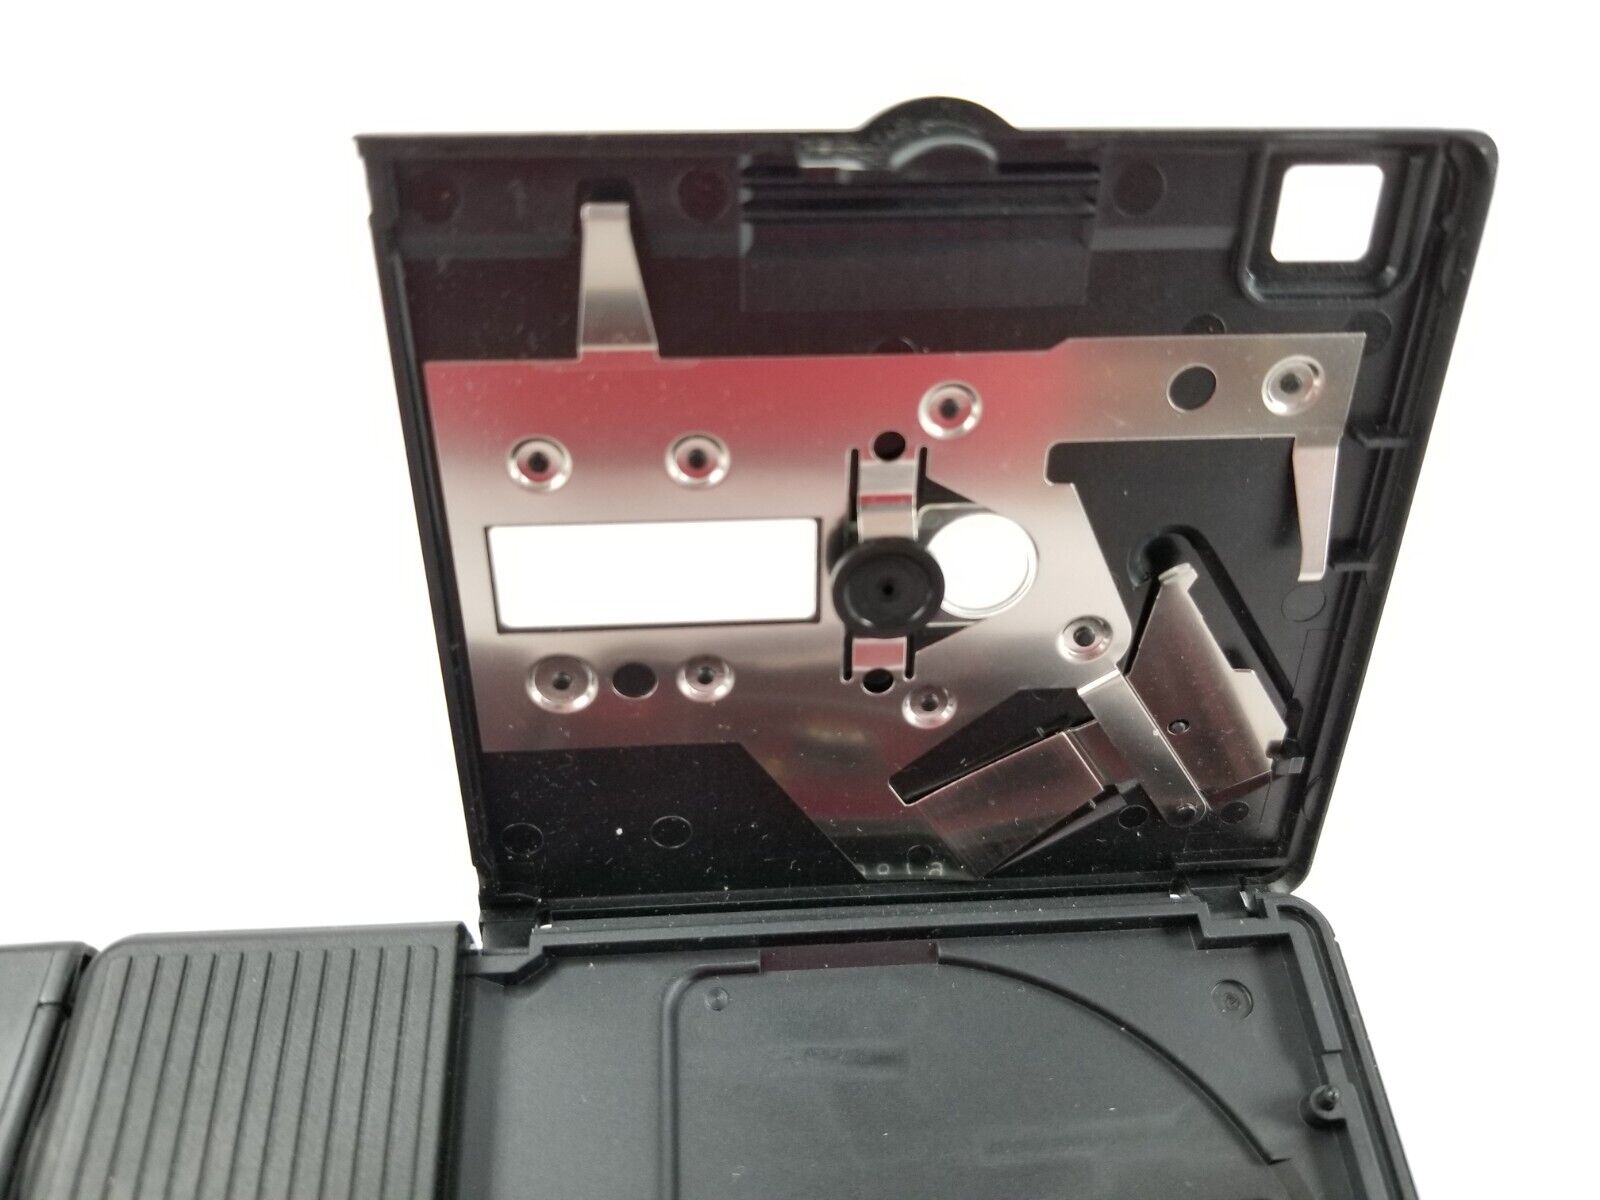 Vintage Minolta Disk-K Camera Uses Disk Film. Untested